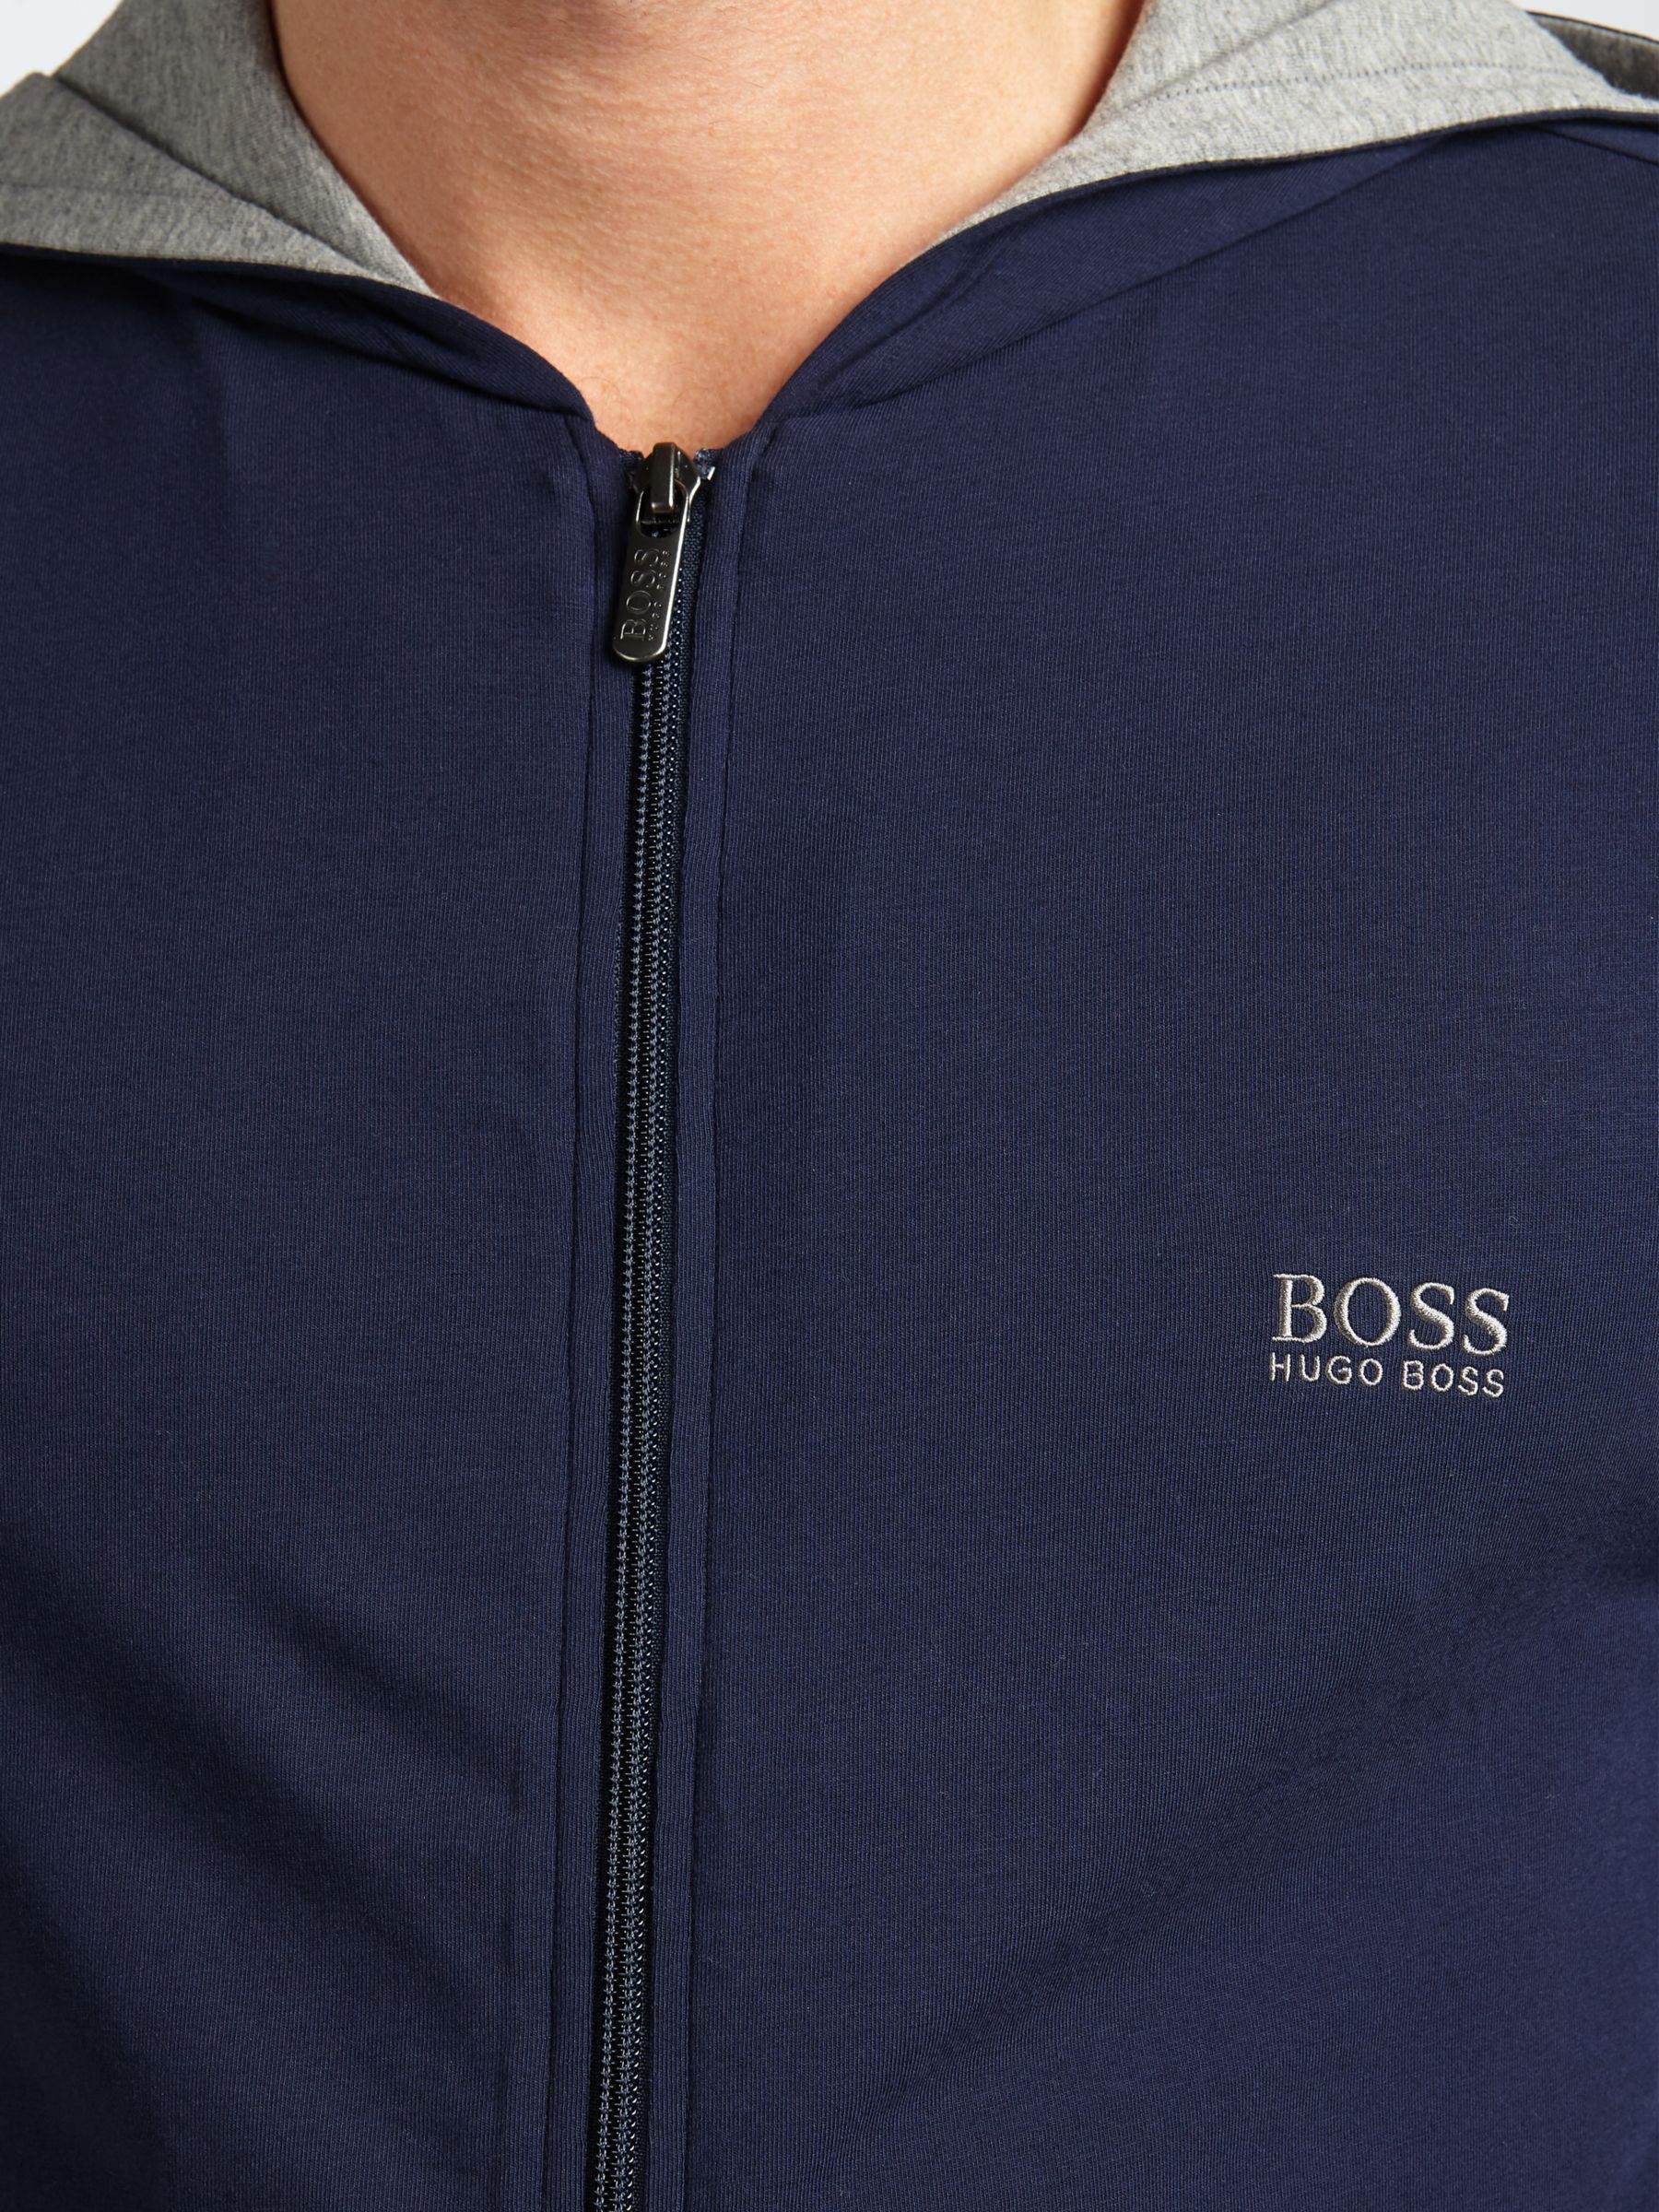 hugo boss mix and match jacket